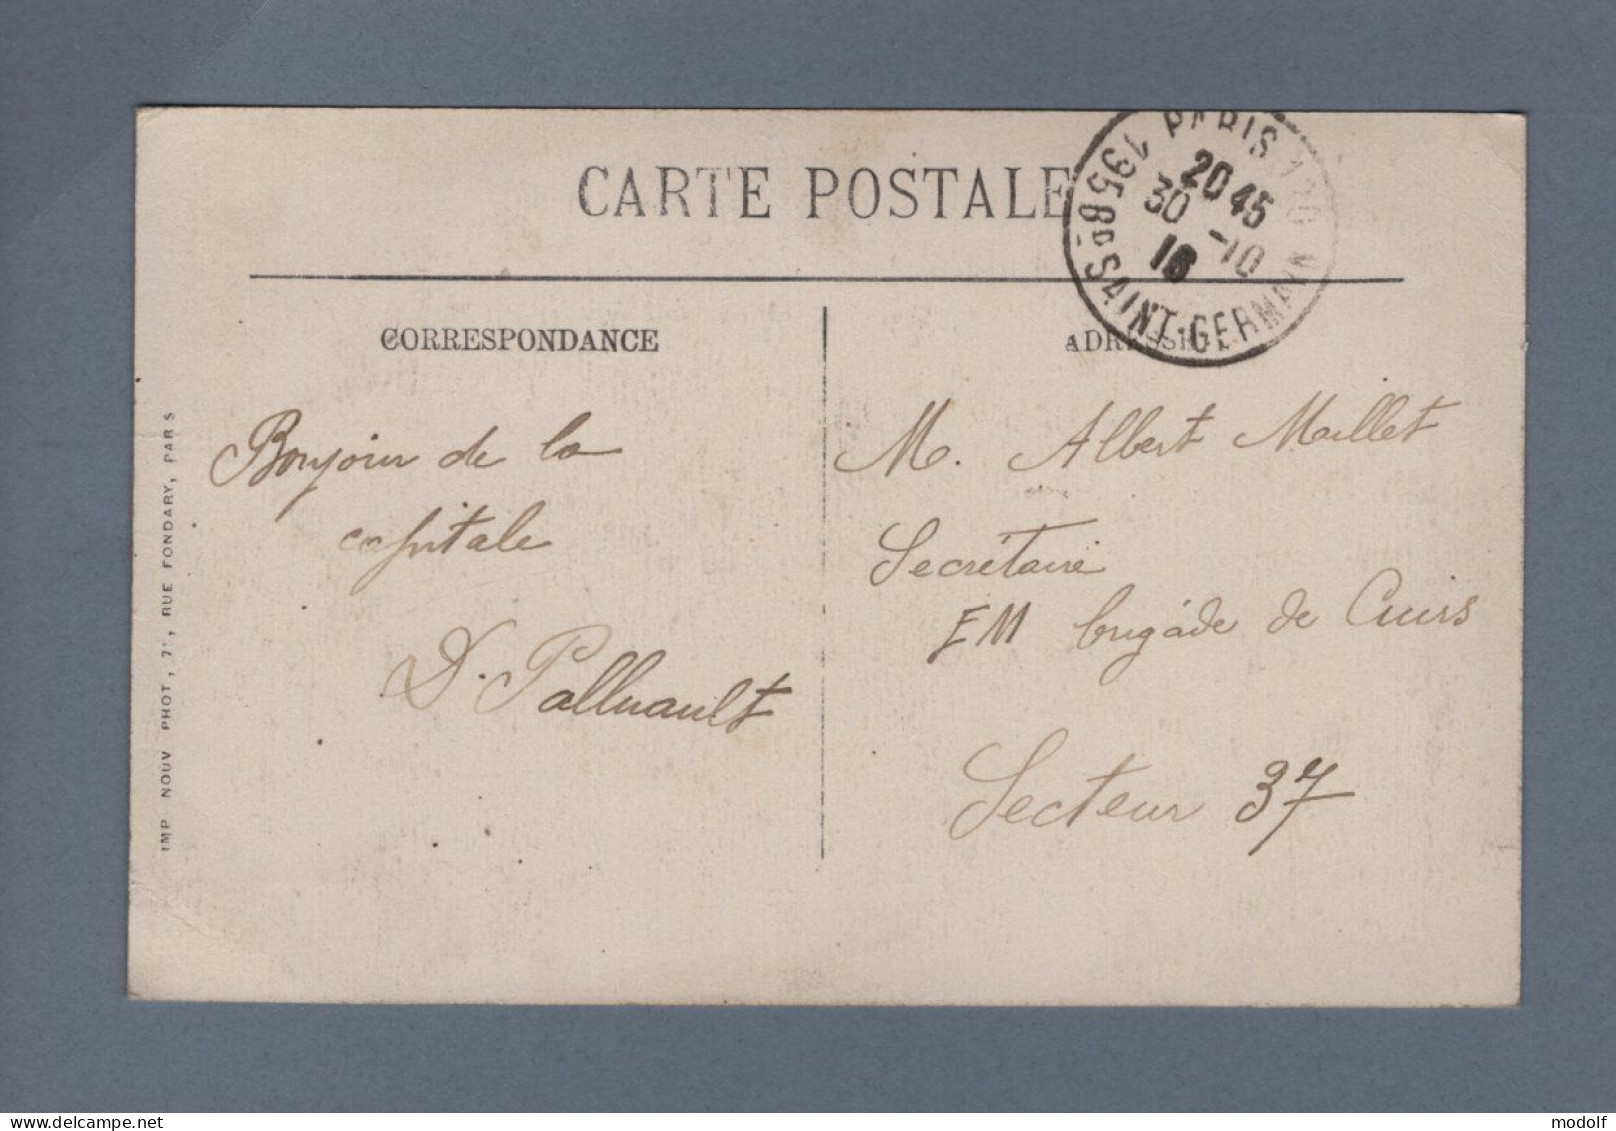 CPA - 75 - Paris - La Place De La Bastille - Animée - Circulée En 1913 - Markten, Pleinen